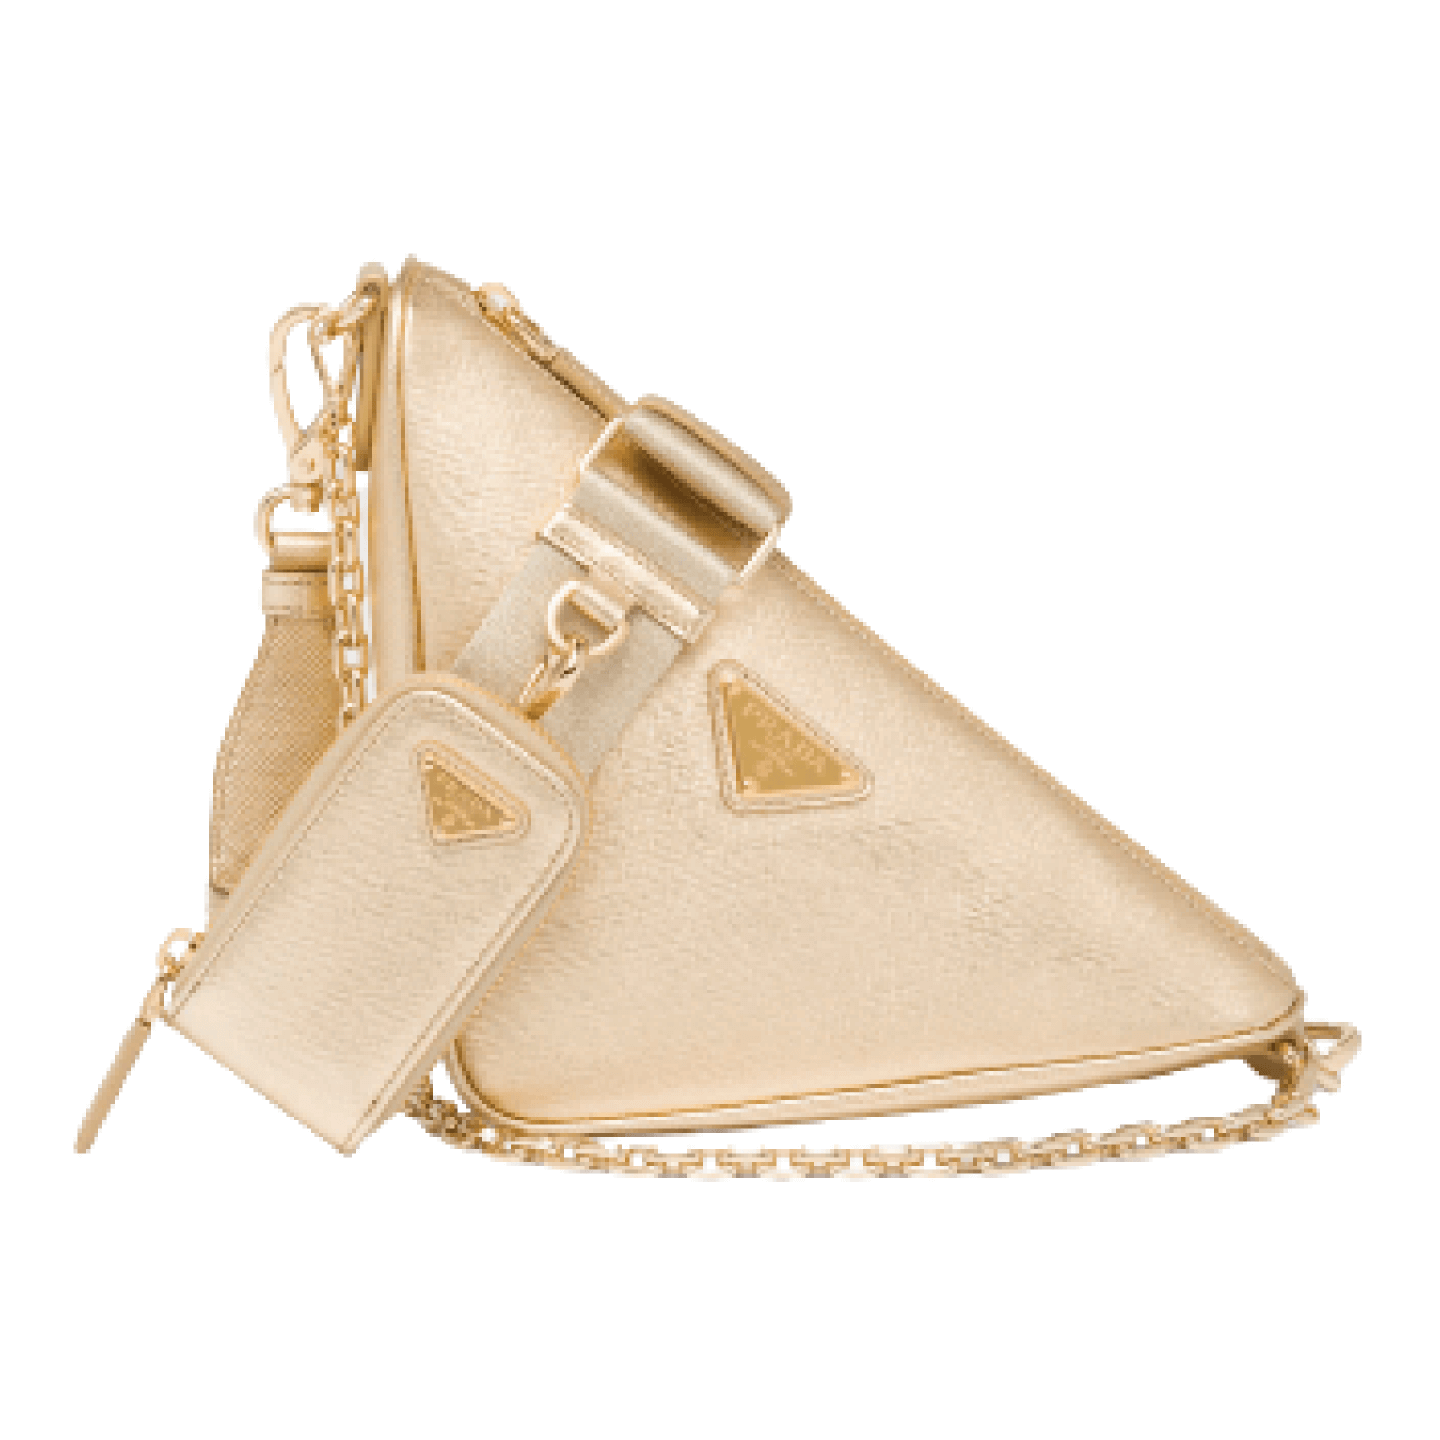 Prada Triangle Saffiano leather shoulder bag